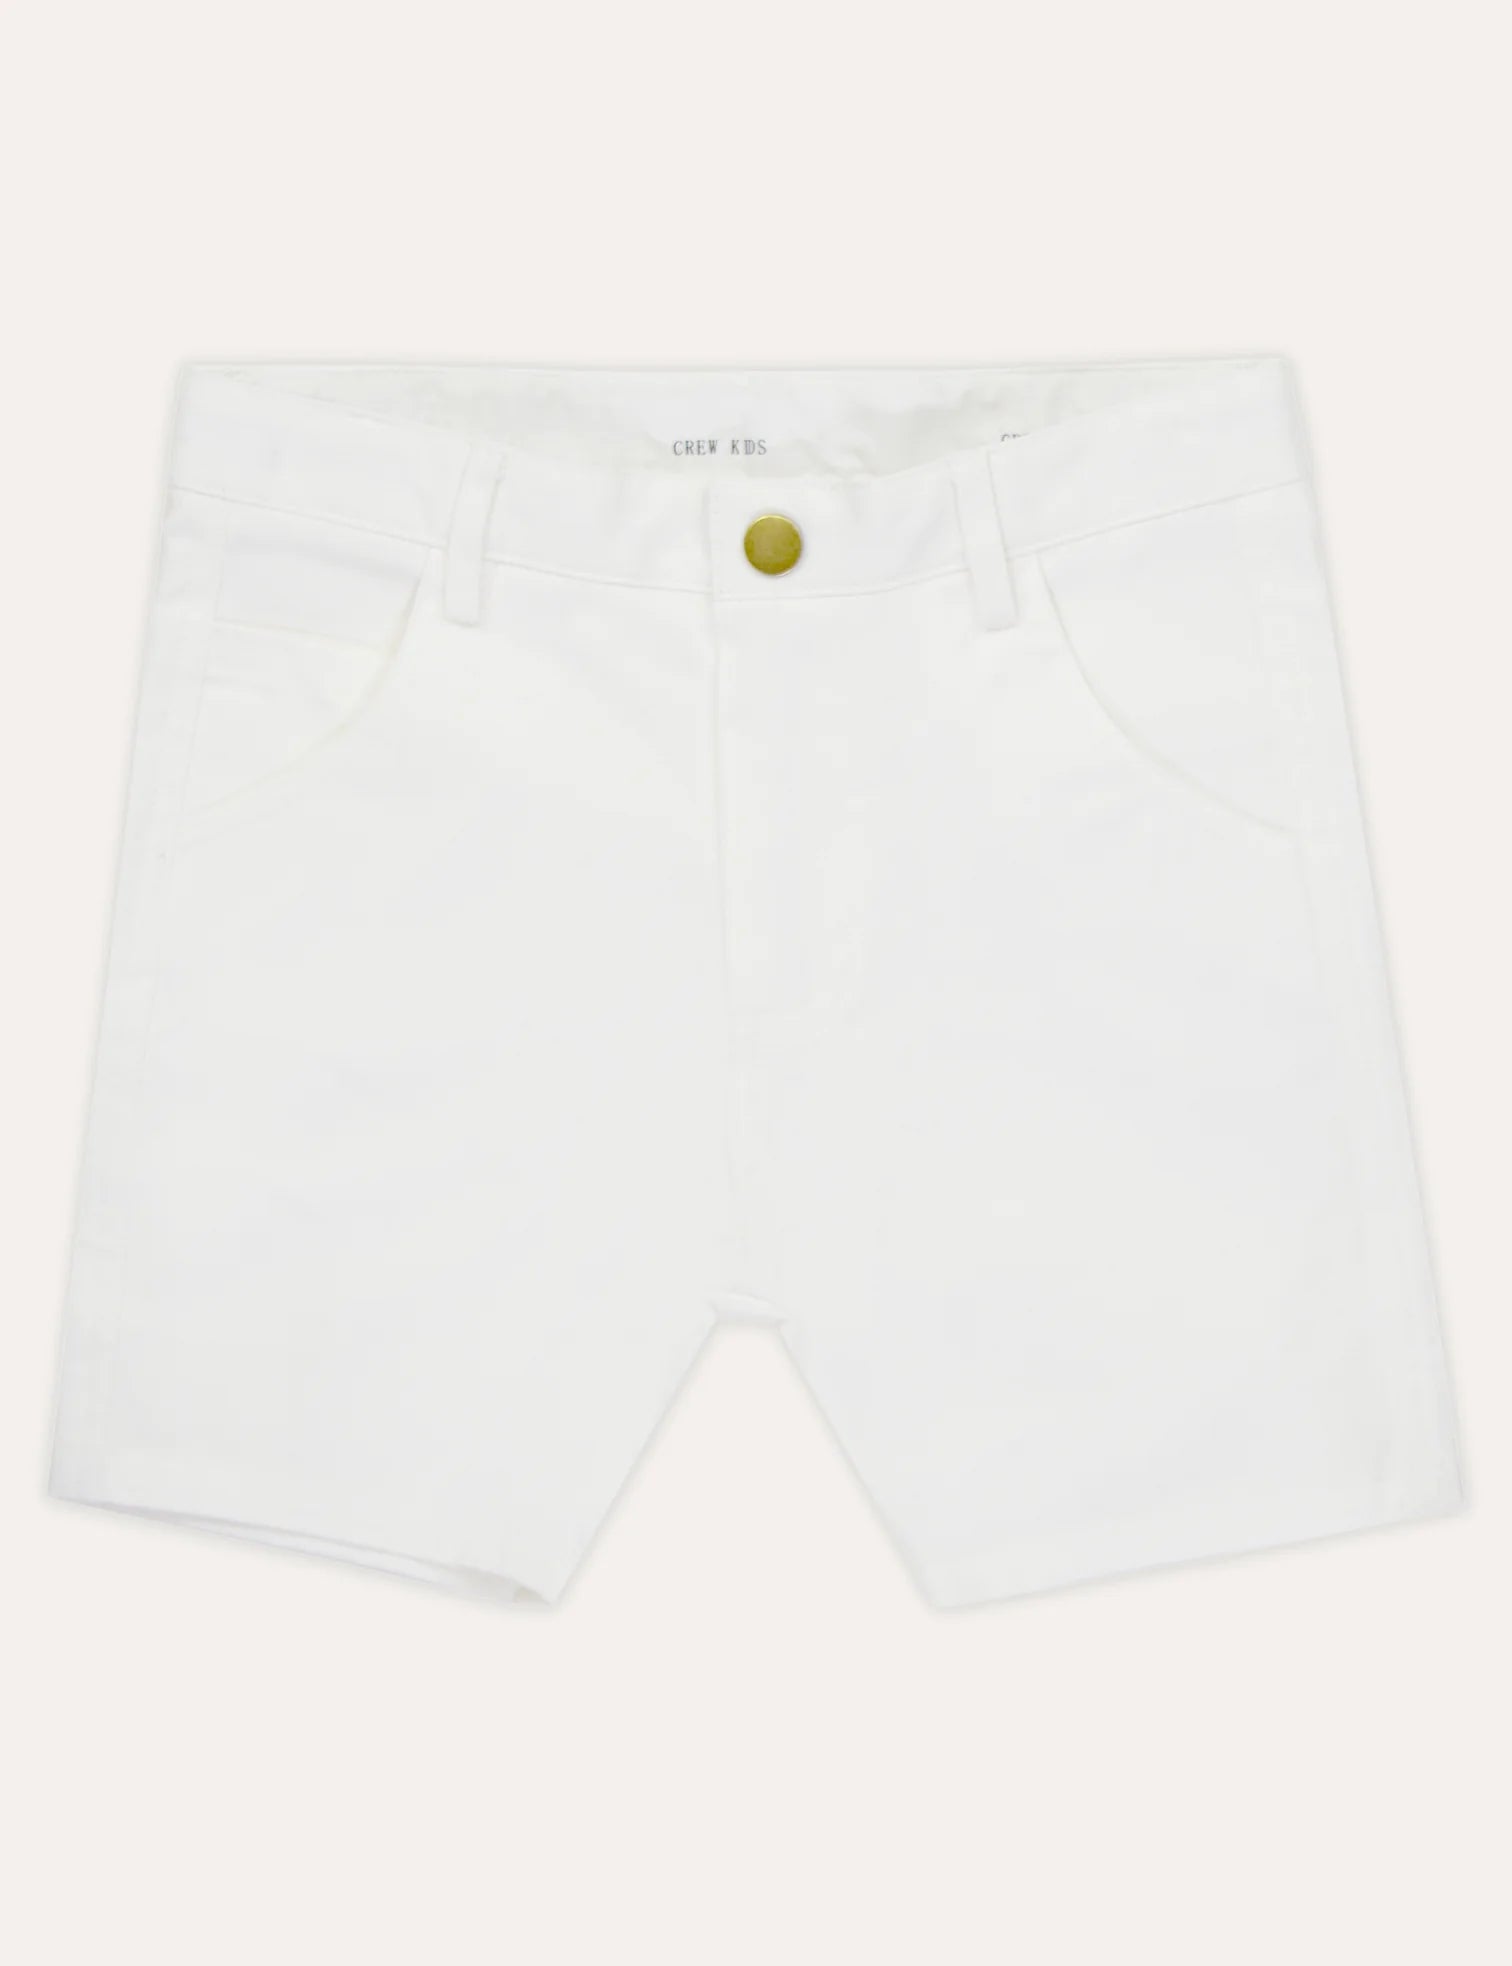 Crew Kids Chino Shorts - Off White